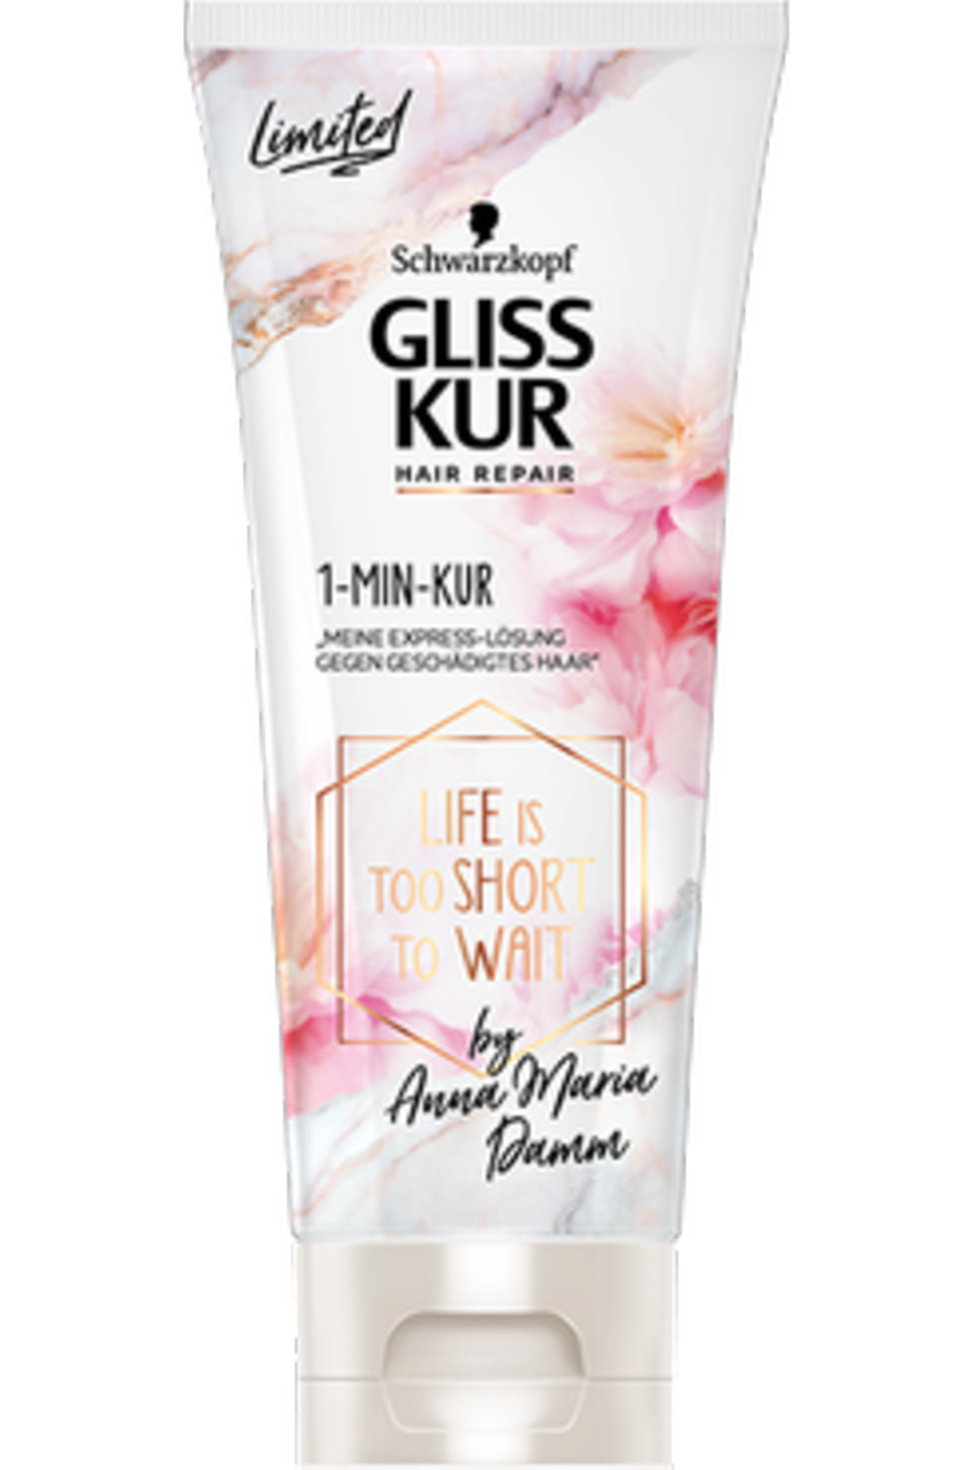 Gliss Kur Hair Repair 1-Min-Kur by Anna Maria Damm